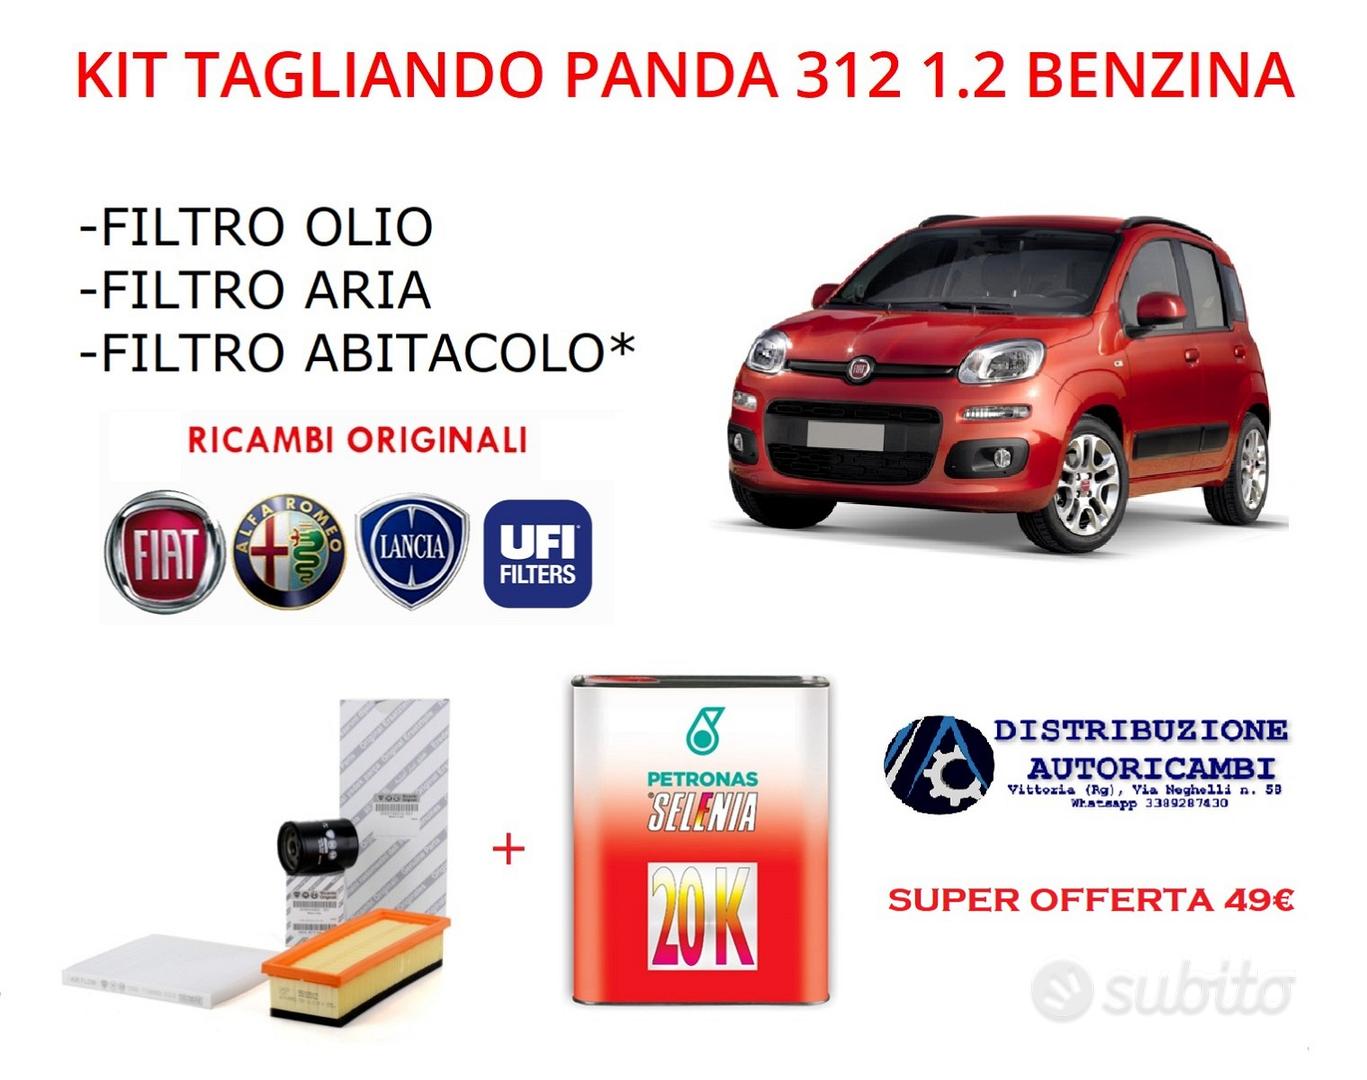 DISTRIBUZIONE AUTORICAMBI - Kit tagliando panda 312 1.2 benzina + 3lt olio  sel - Accessori Auto In vendita a Ragusa - Subito